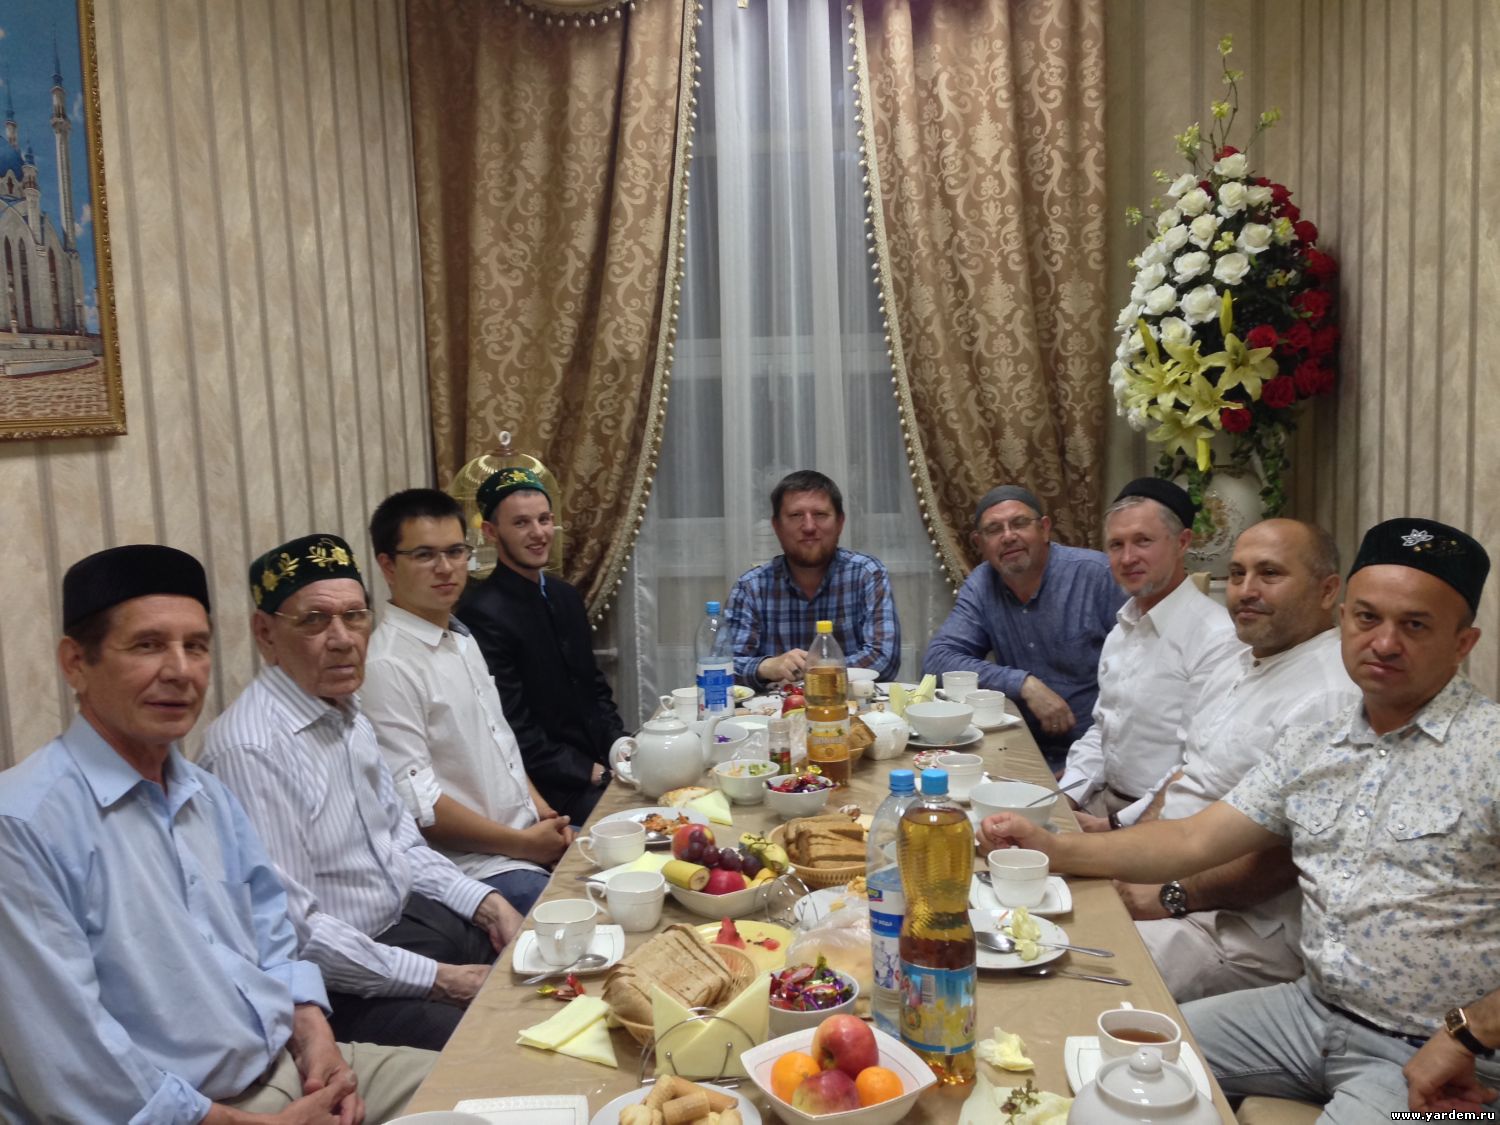 Ильхам Шакиров посетил ифтар мечети "Ярдэм". Общие новости